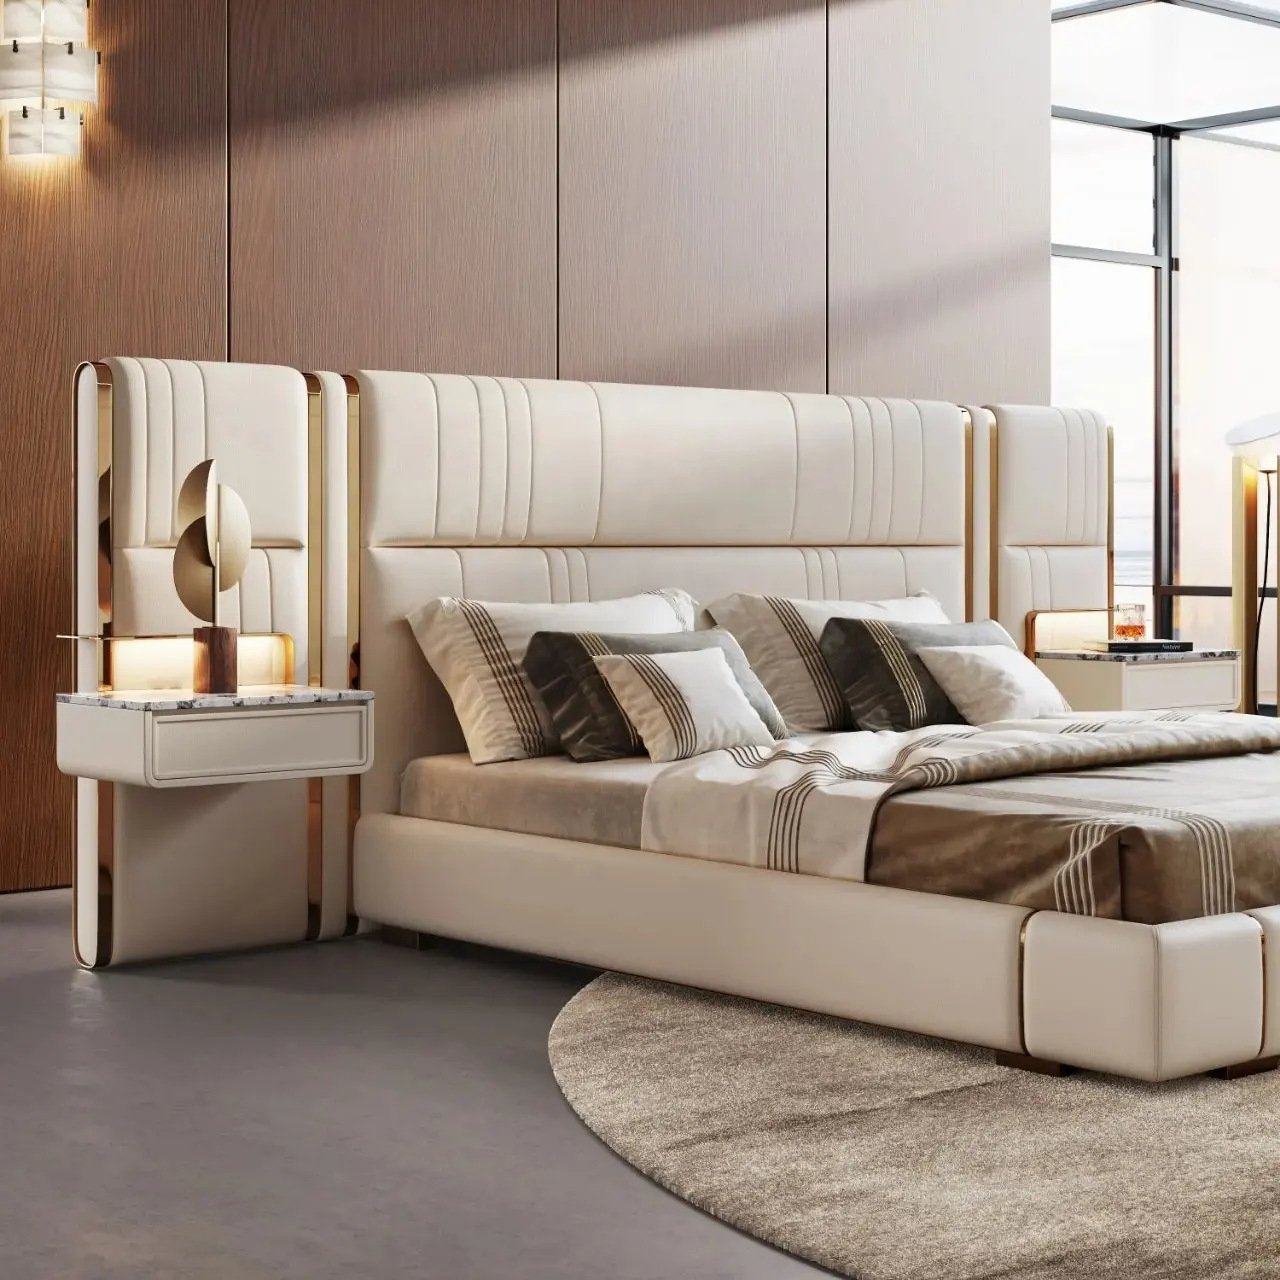 Cama de luxo italiana king size luz minimalista widescreen, cabeceira de couro, móveis para quartos grandes, móveis para quartos grandes e hotéis